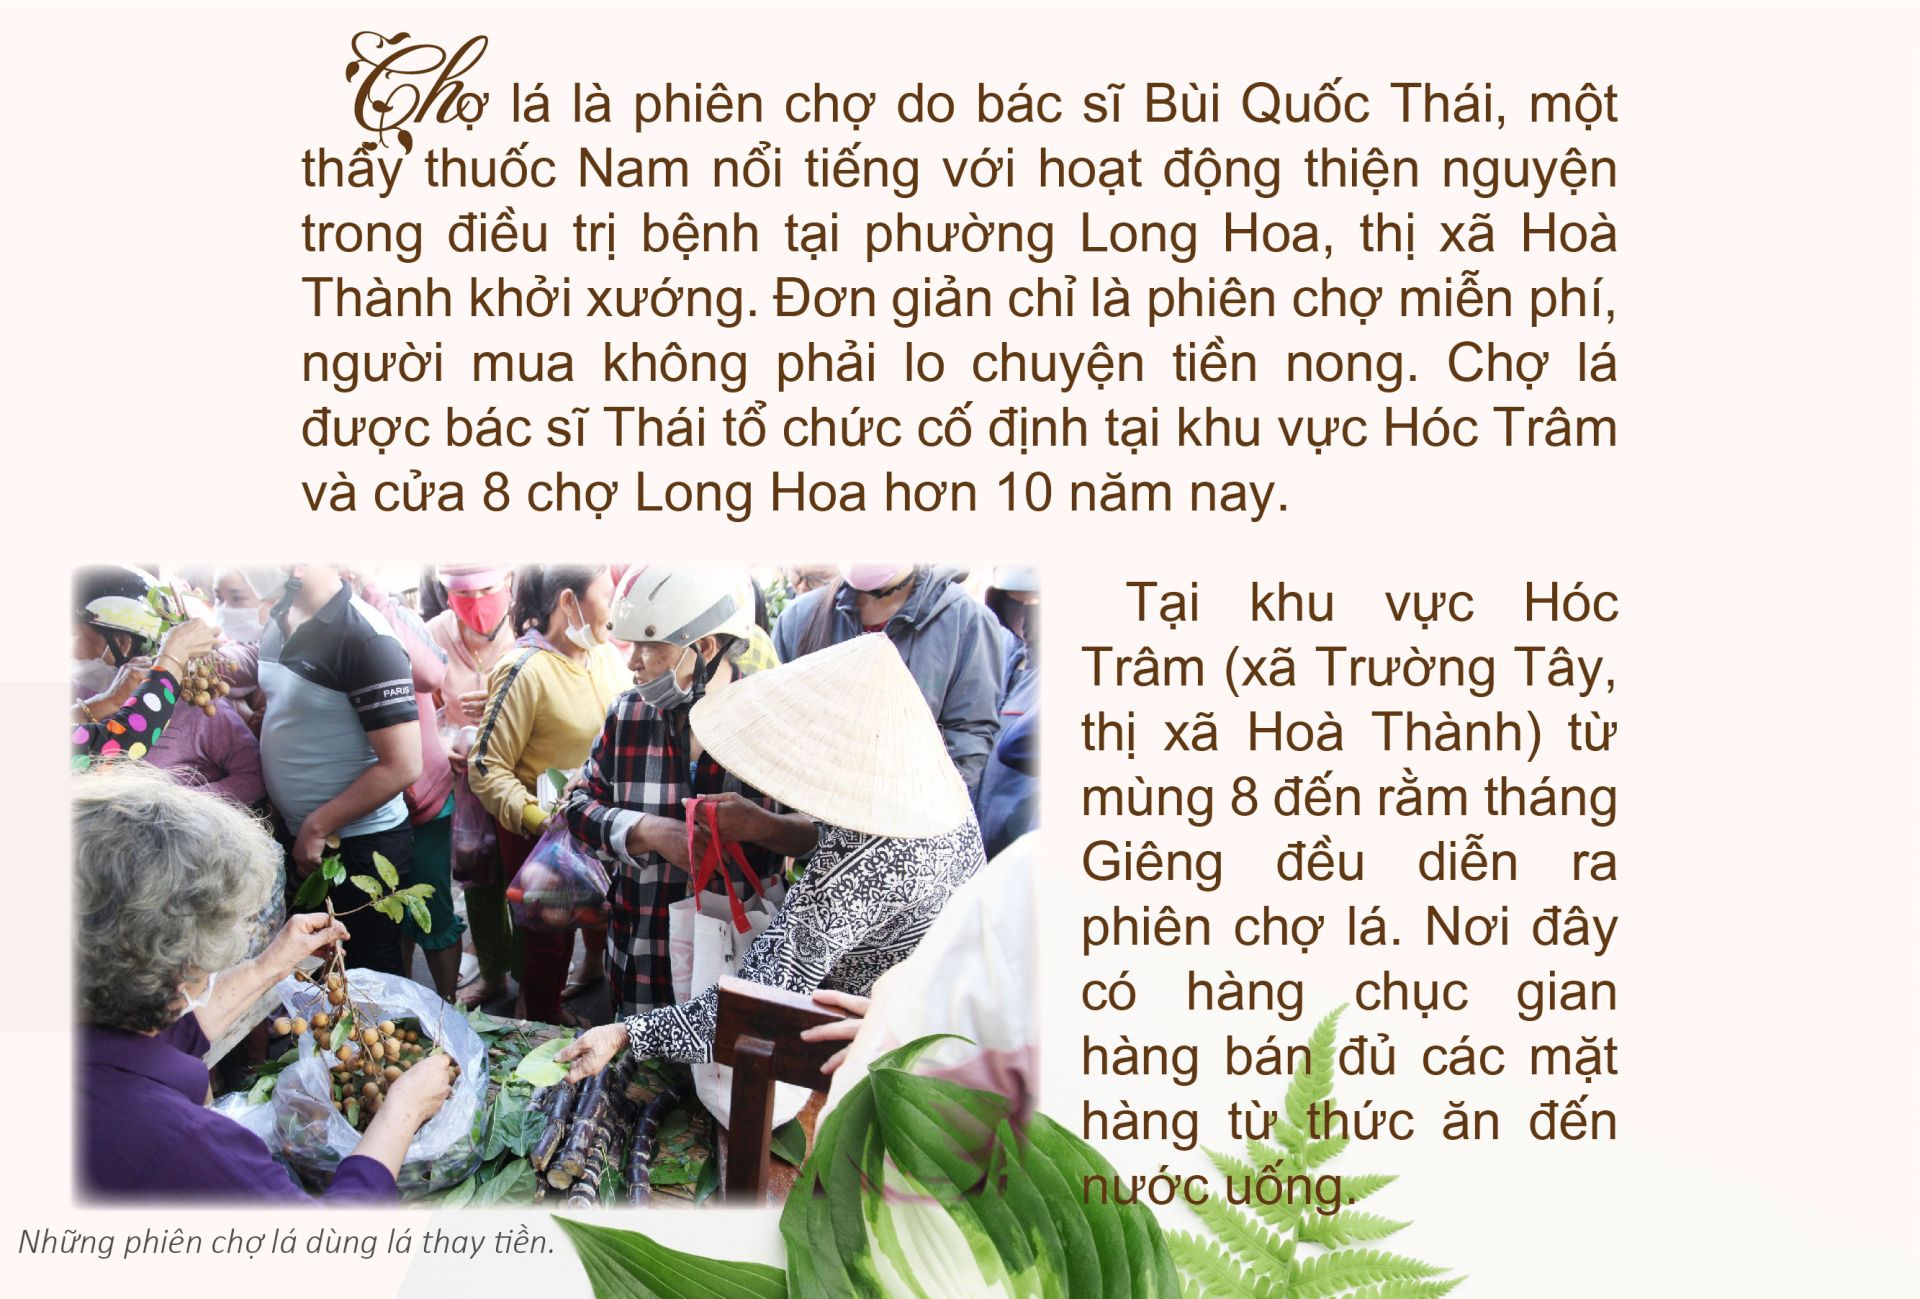 Chợ lá- “thương hiệu” của Tây Ninh